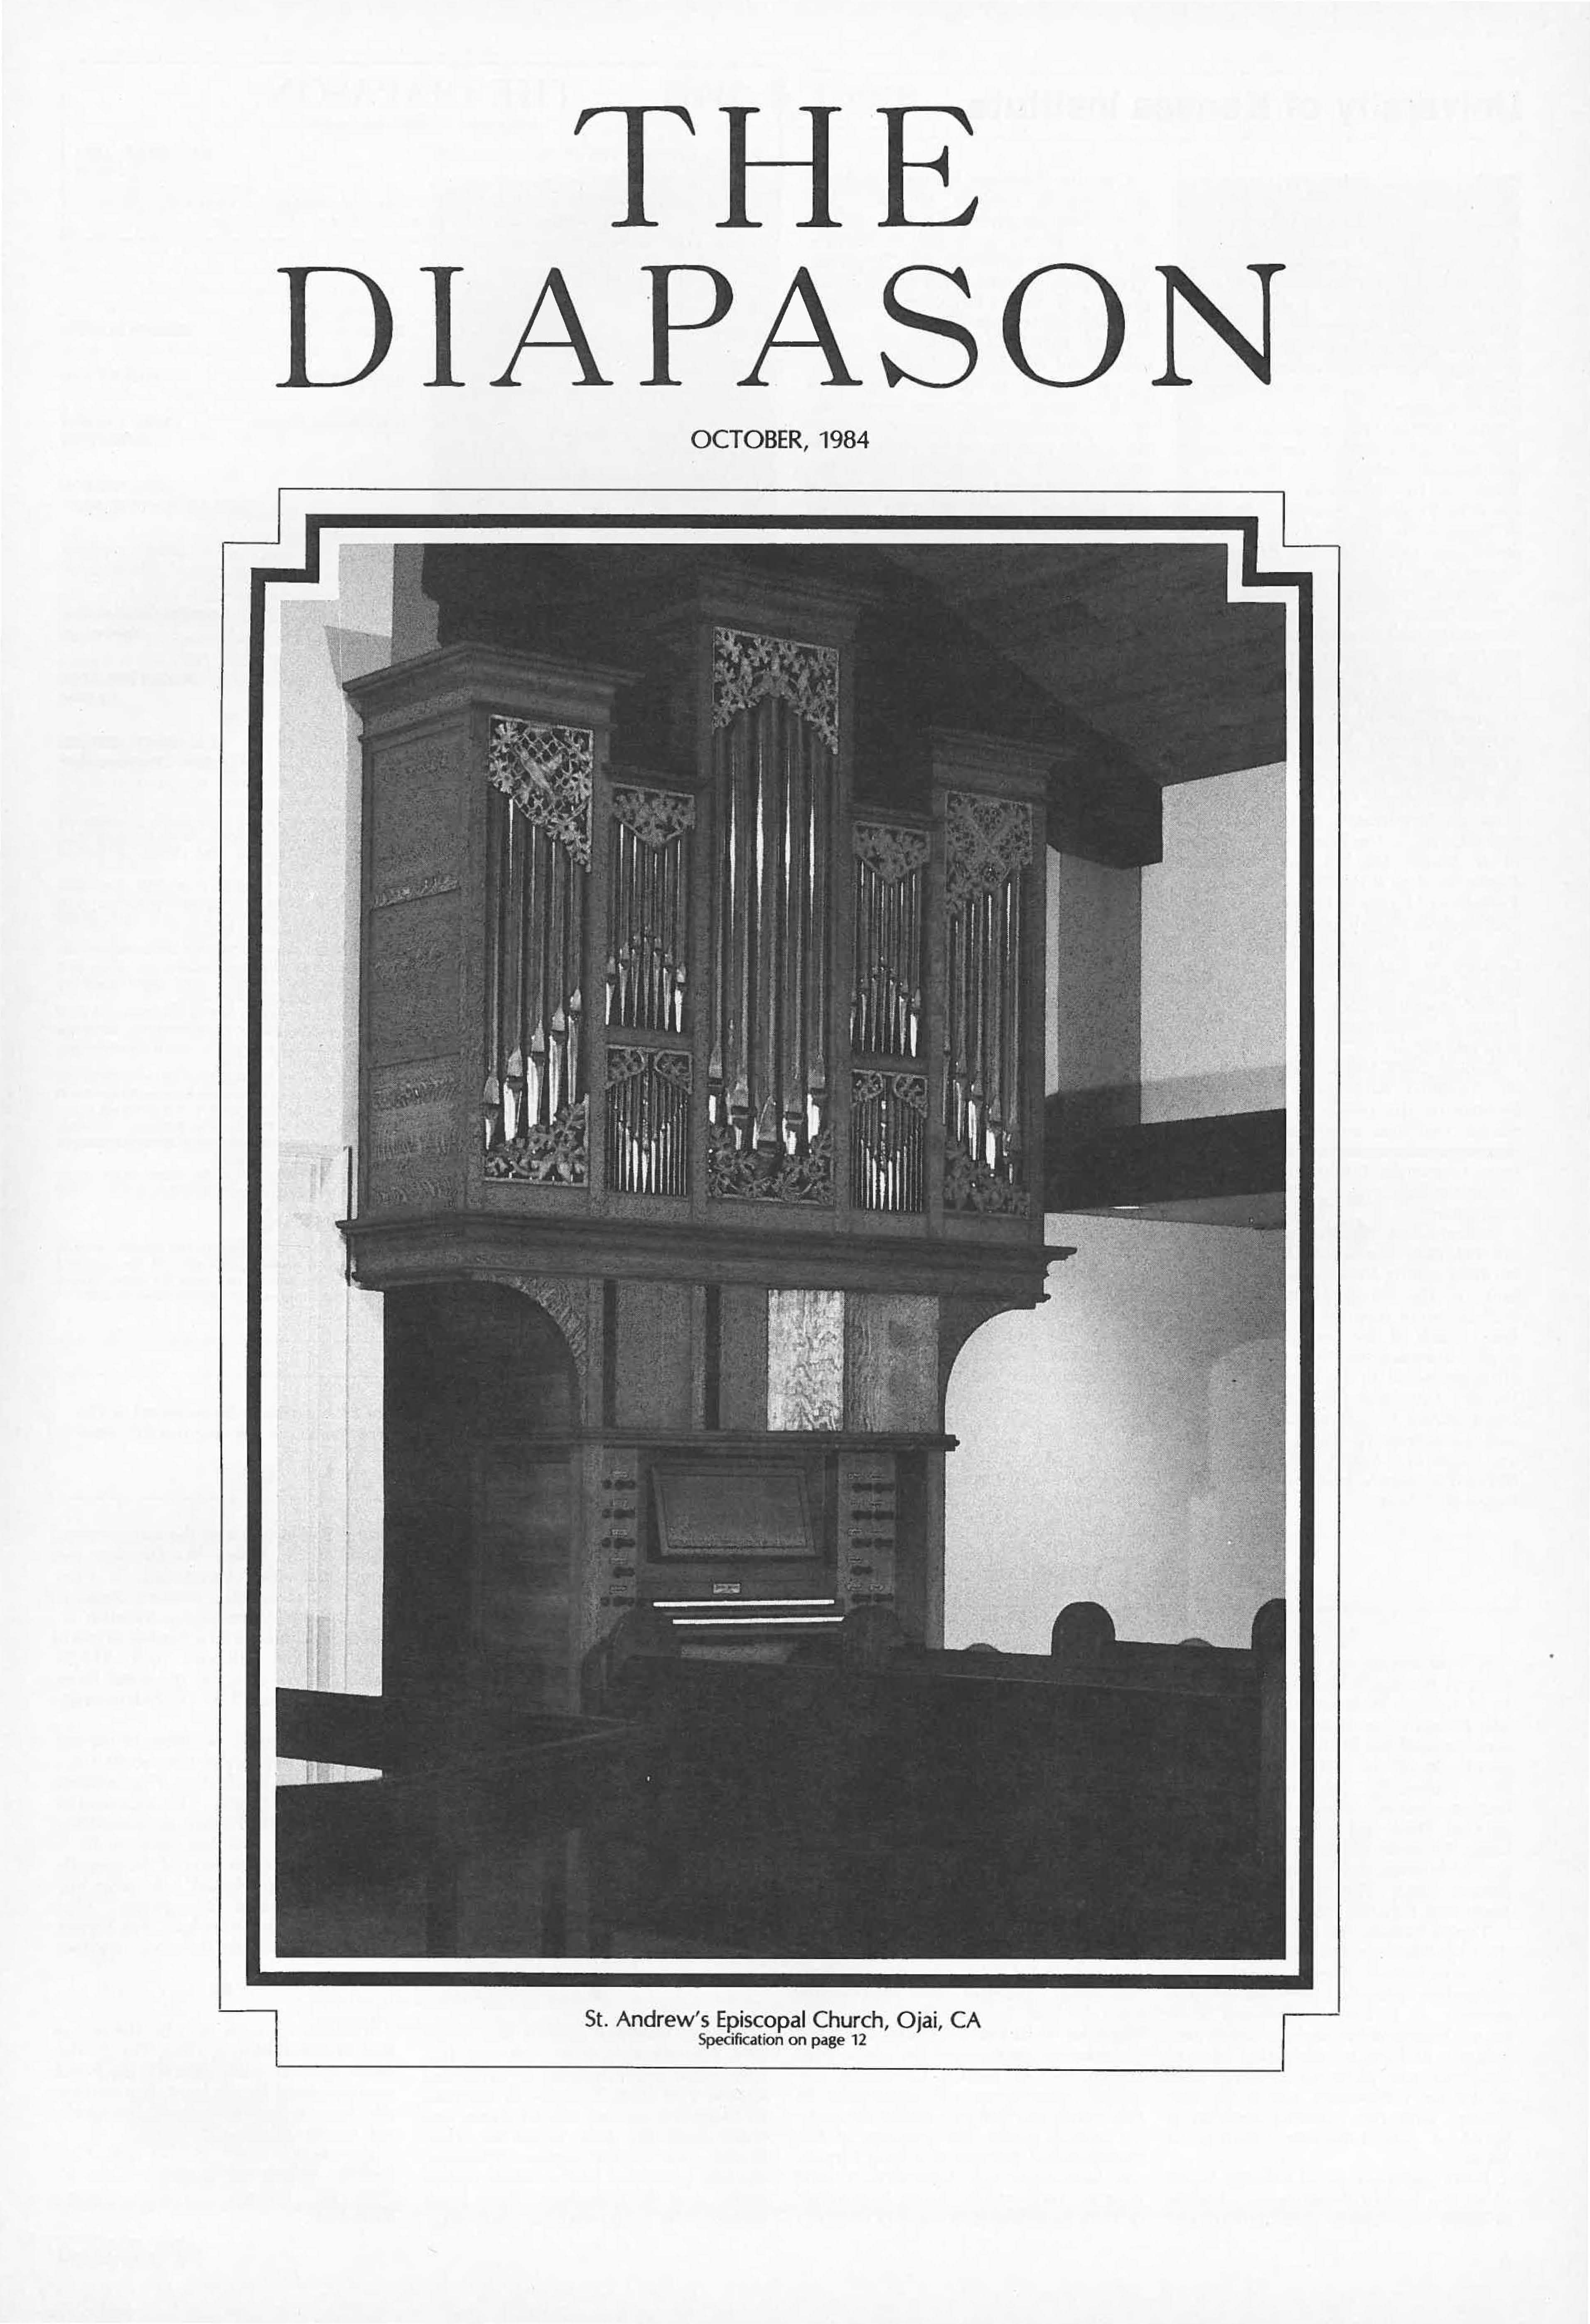 October 1984 Full Issue PDF